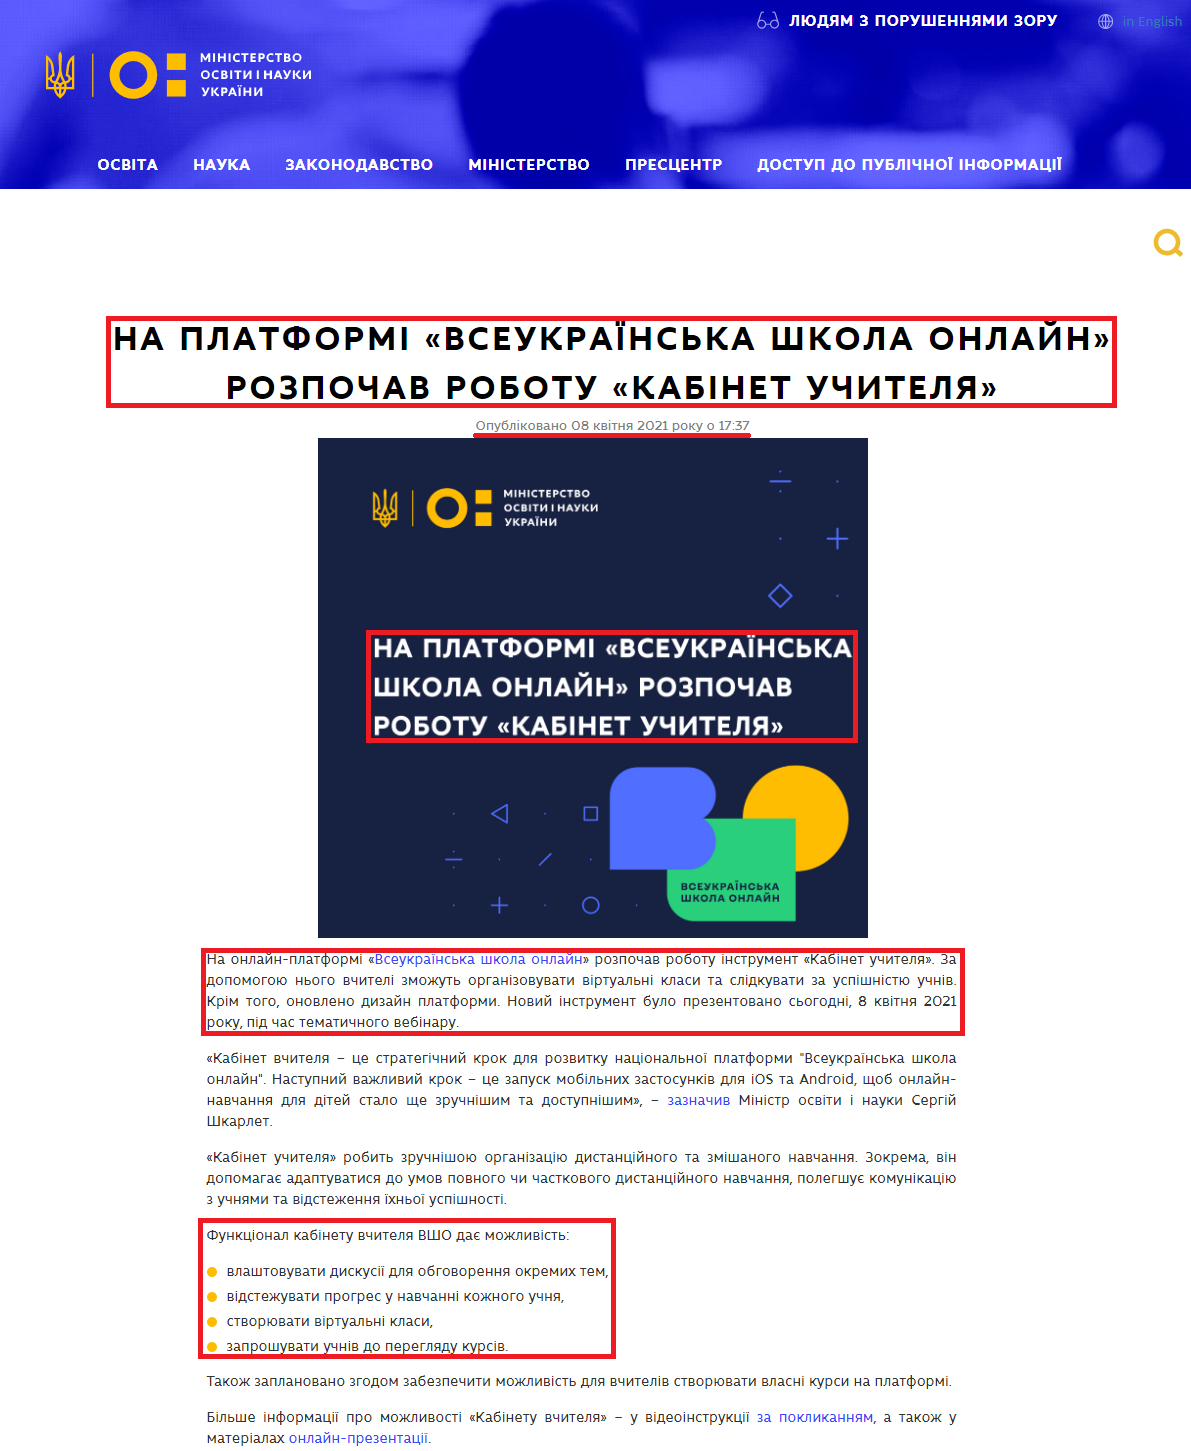 https://mon.gov.ua/ua/news/na-platformi-vseukrayinska-shkola-onlajn-rozpochav-robotu-kabinet-uchitelya